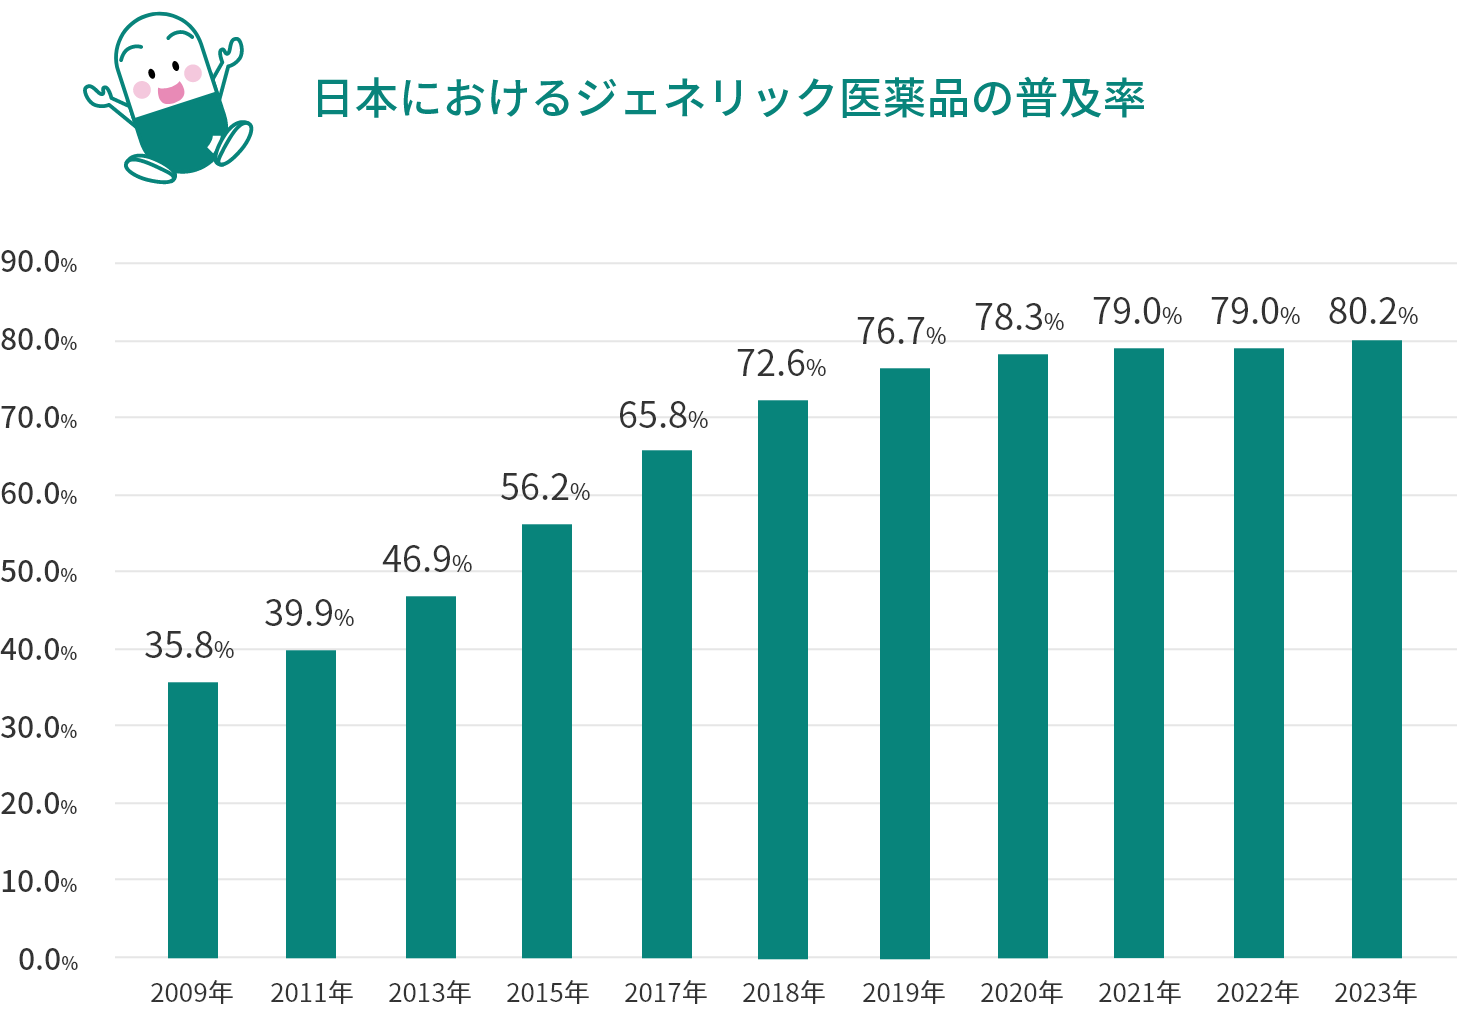 日本におけるジェネリック医薬品の使用率の推移の棒グラフ